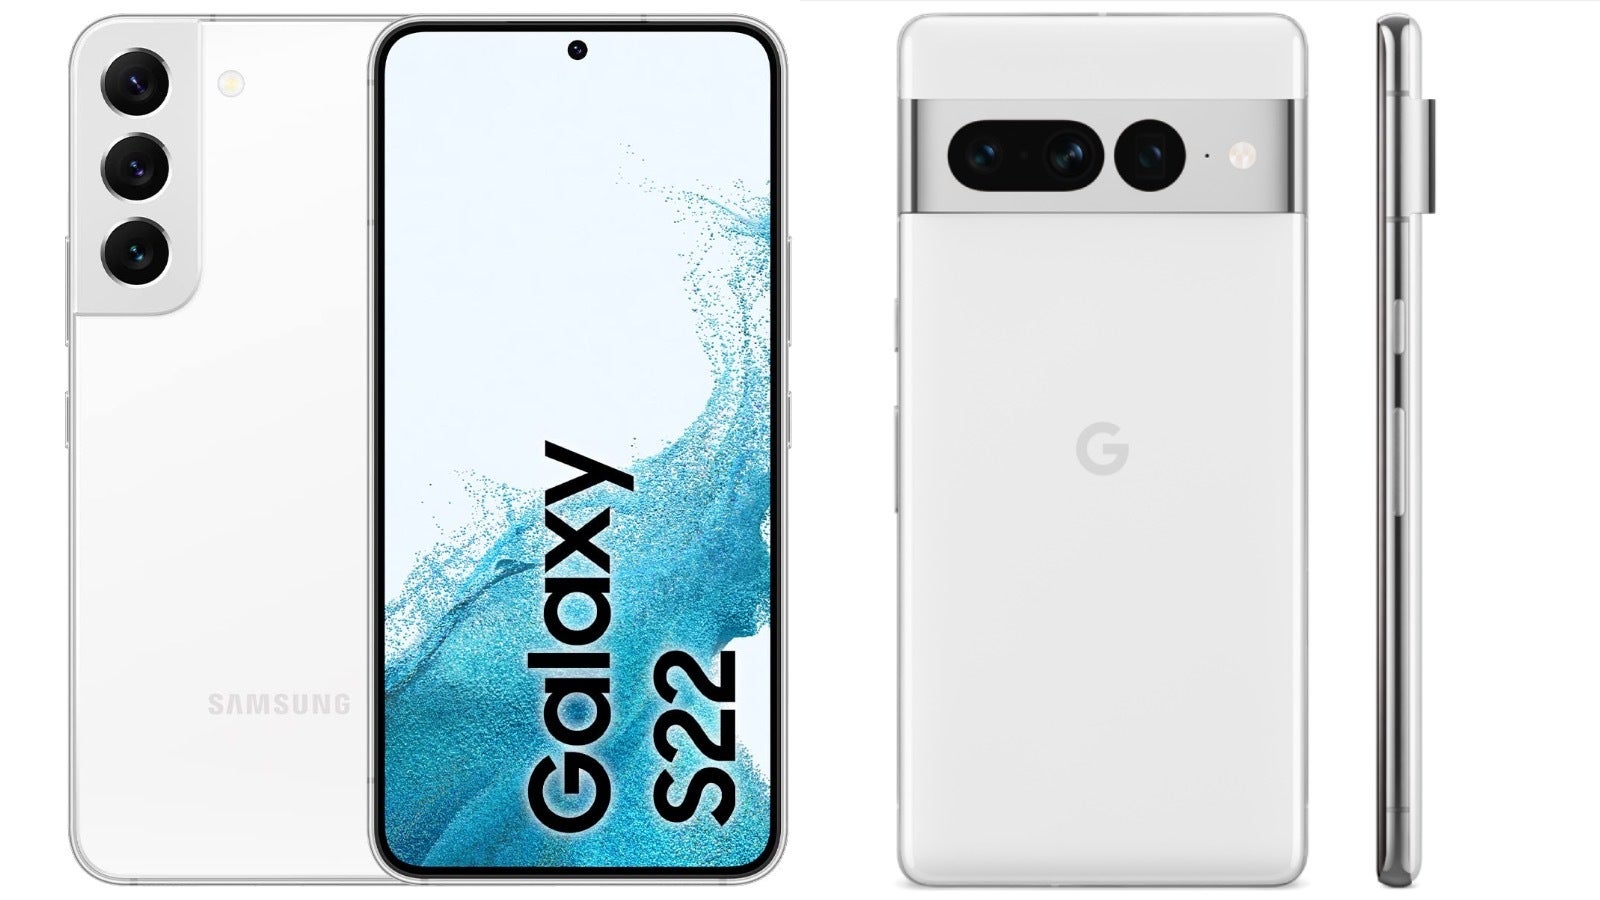 Das Pixel 7 ist möglicherweise der größte Konkurrent des Galaxy S22 Fe.  Das bestgehütete Geheimnis von Samsung!  Ein erstklassiges Telefon, das billiger als das Galaxy S23 ist, um bald die Show zu stehlen?